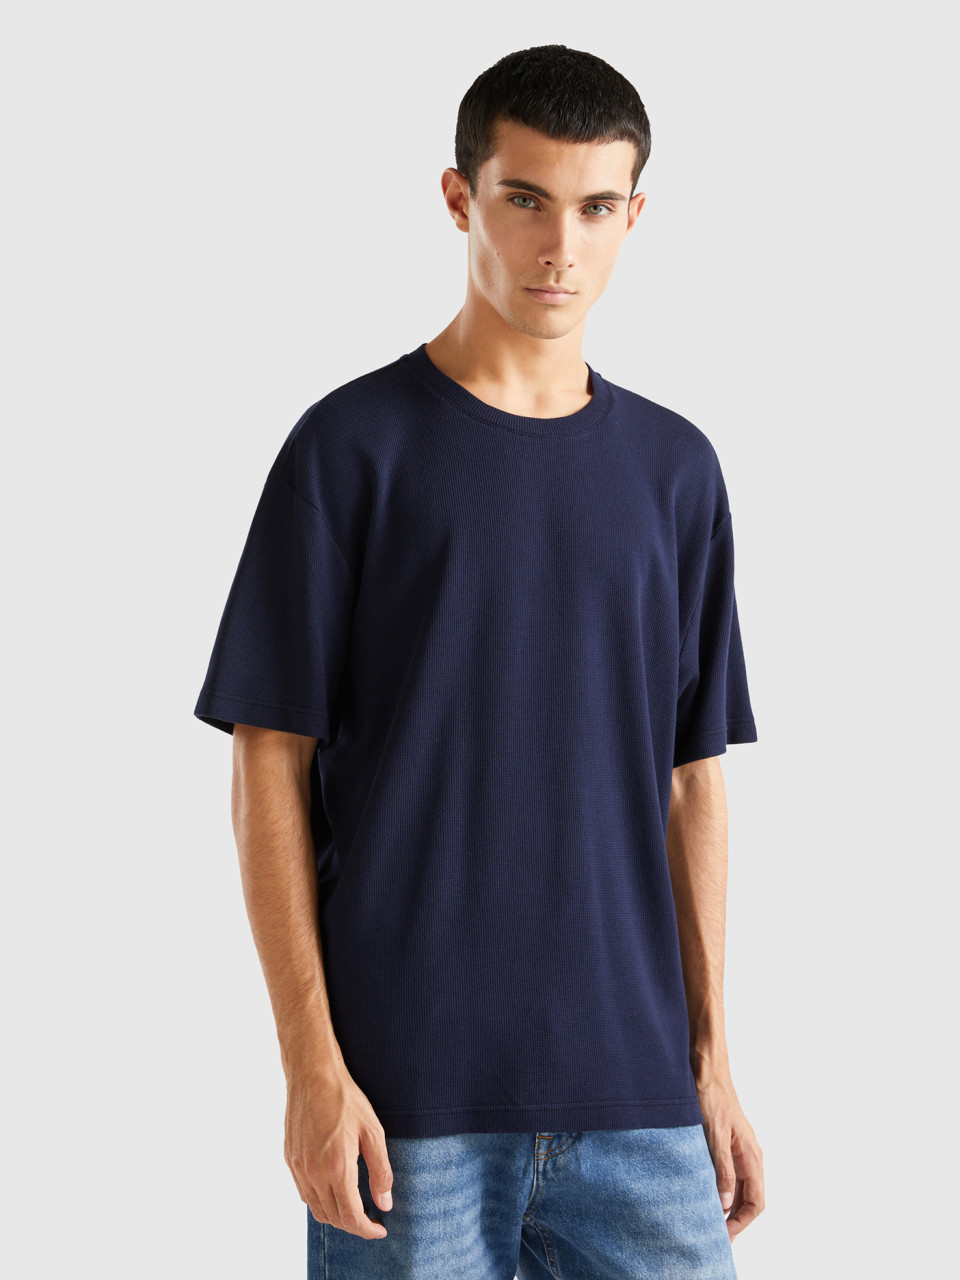 Benetton, Relaxed Fit T-shirt, Dark Blue, Men